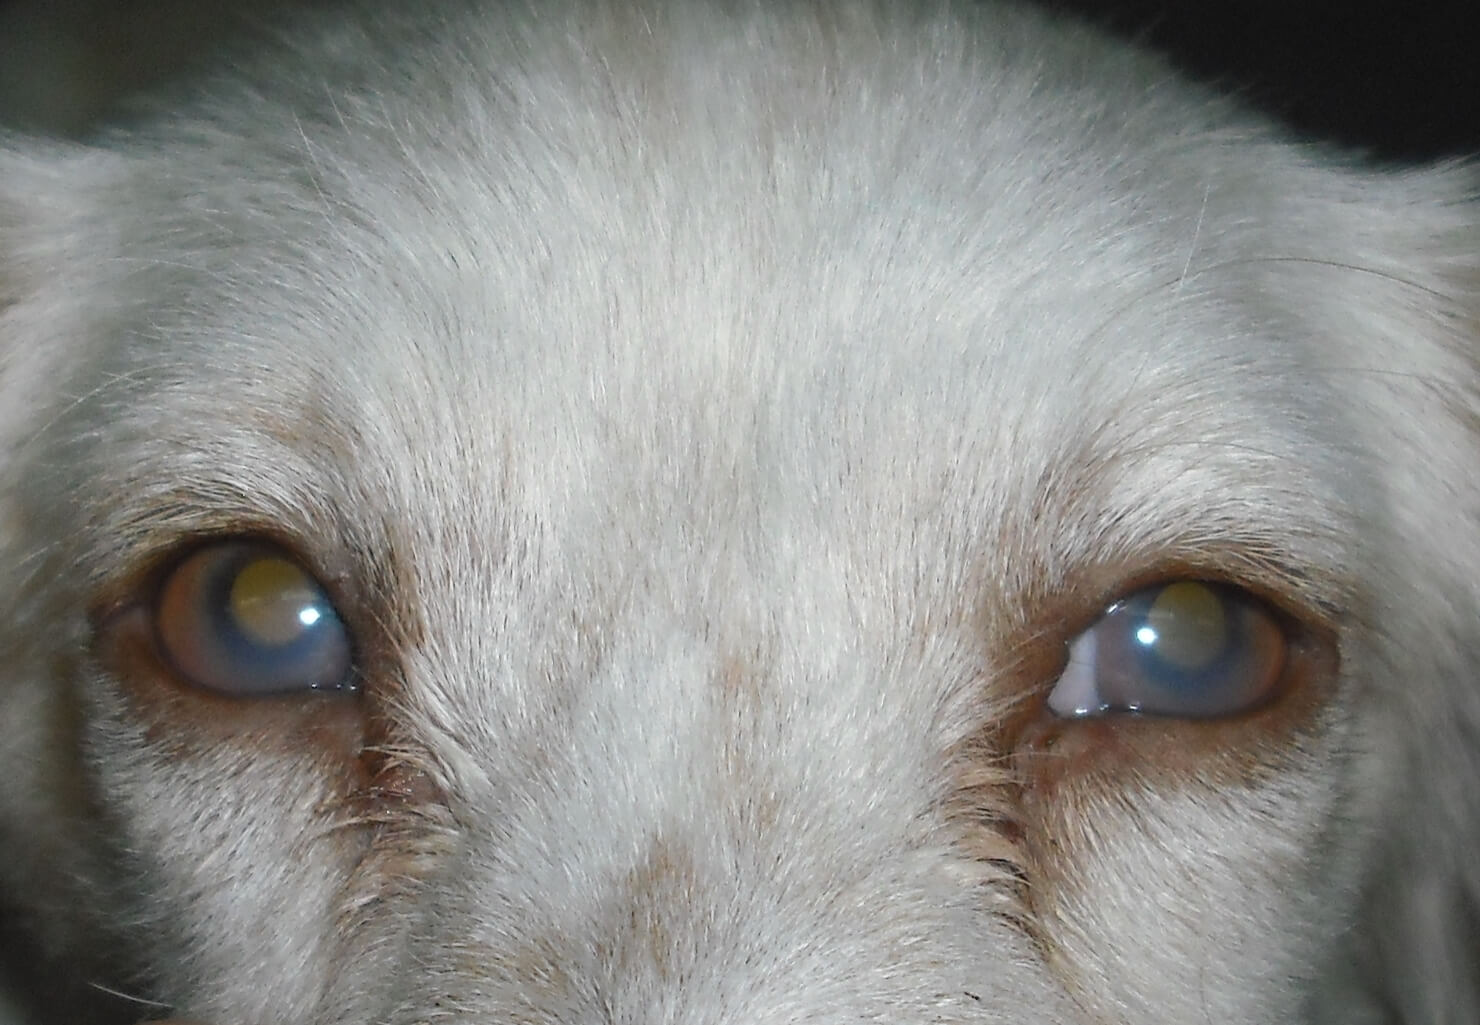 A dog's eyes.